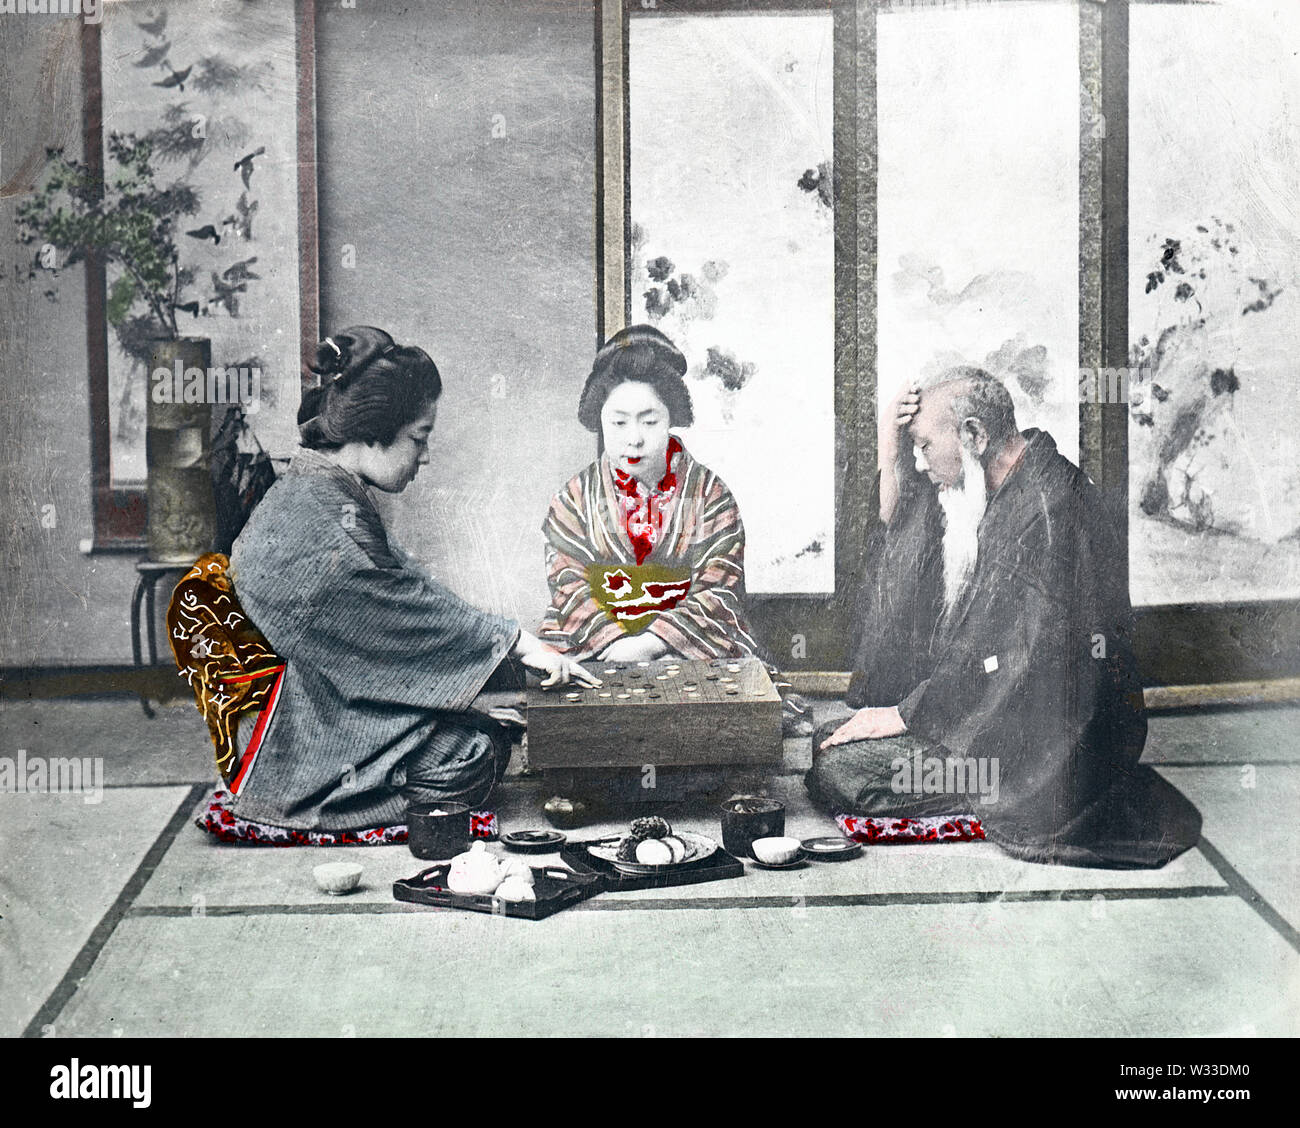 [1890s Japan - Spielen] - Zwei junge Frauen im Kimono und traditionellen Frisuren und ein älterer Mann in einem haori Mantel sind um ein Board für das Go-spiel sitzt. Das Studio ist als Zashiki (Gästezimmer), mit einem Bildschirm, eine ikebana Blumen und blättern Sie in der Rückseite angeordnet. Ein kleines Fach mit einer Teekanne und zwei Tassen kann an der Vorderseite gesehen werden. 19 Vintage Glas schieben. Stockfoto